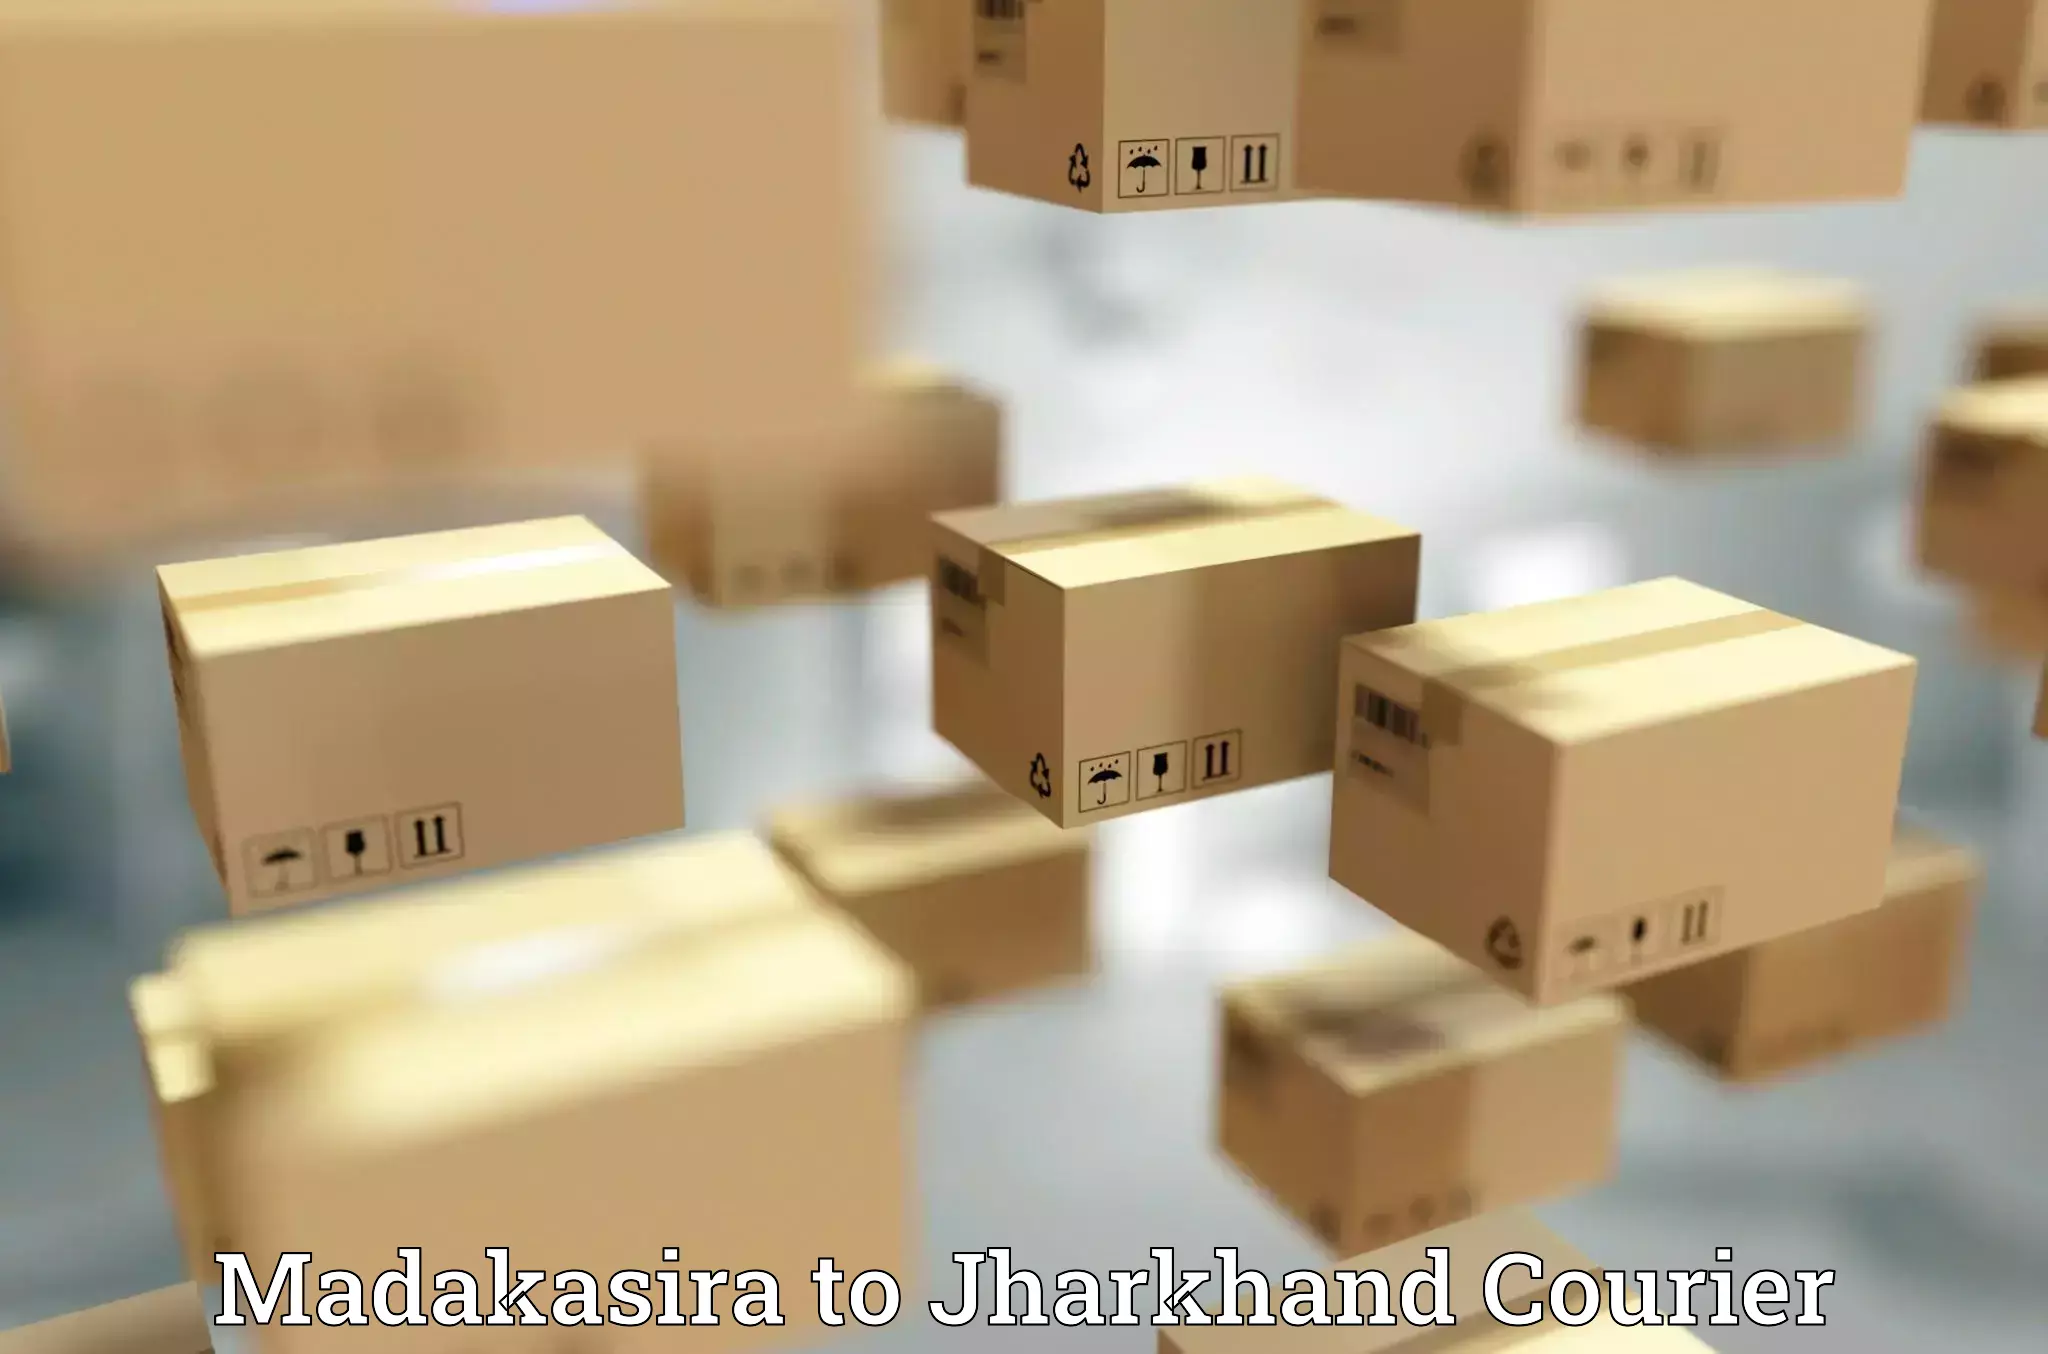 Professional courier handling Madakasira to Manoharpur